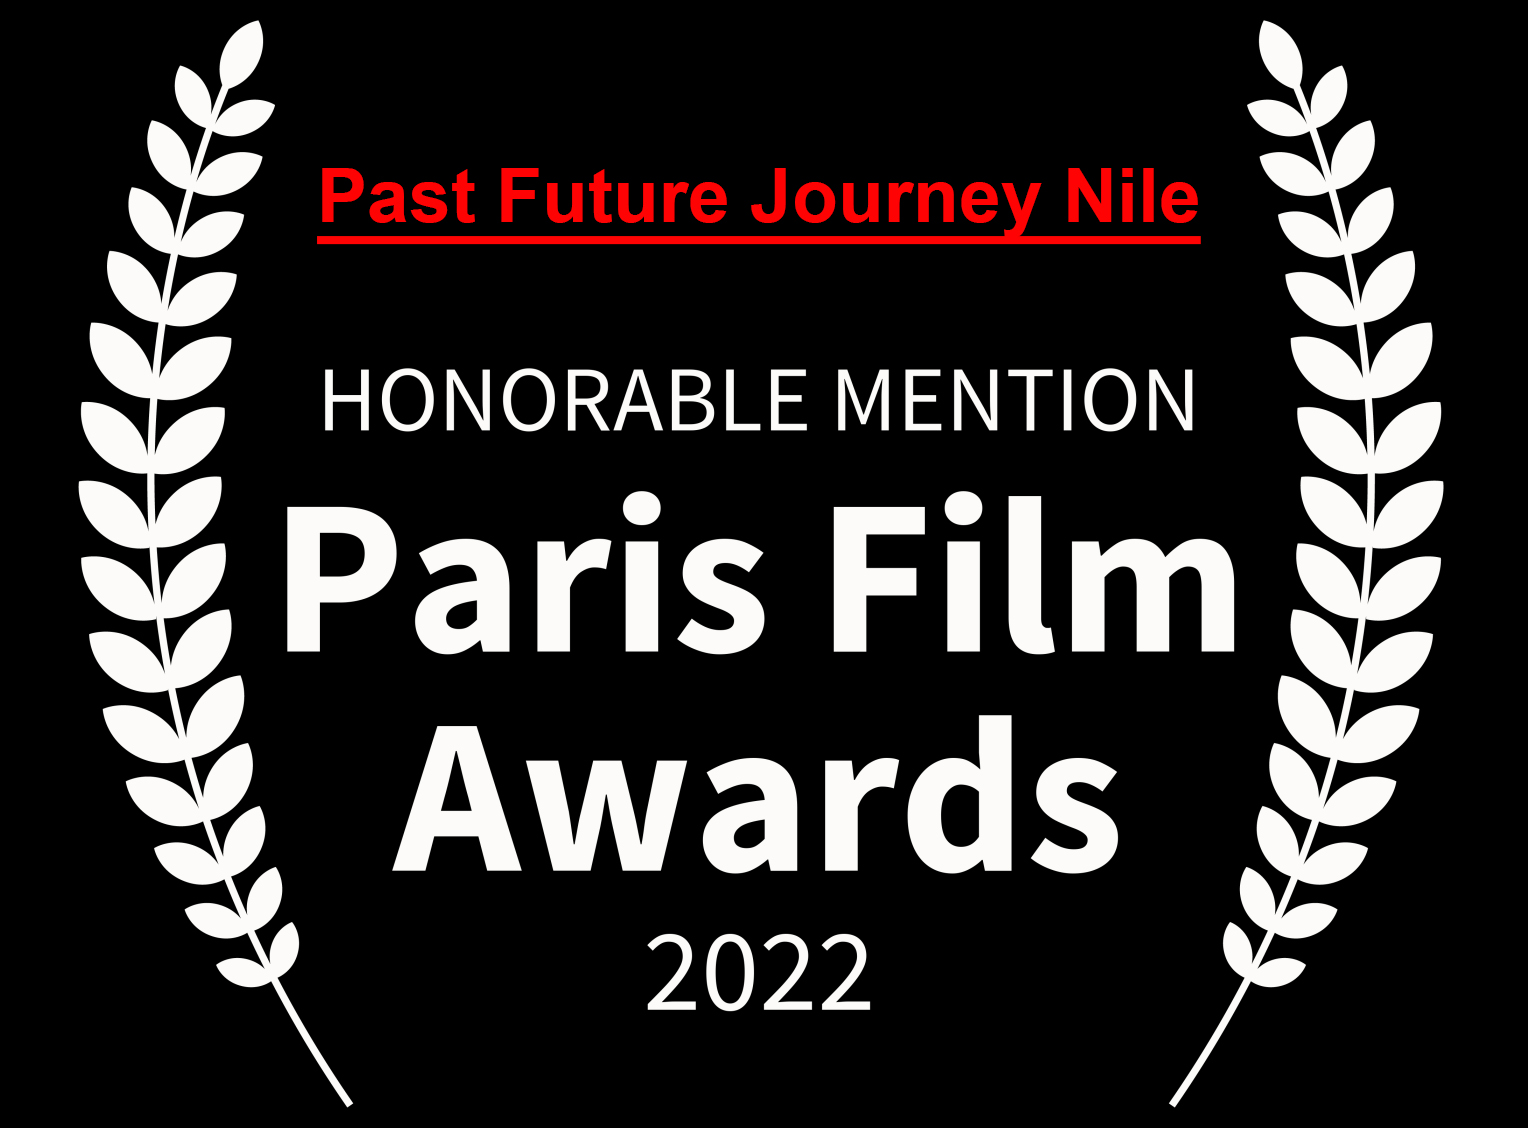 Paris Film Awards 2022